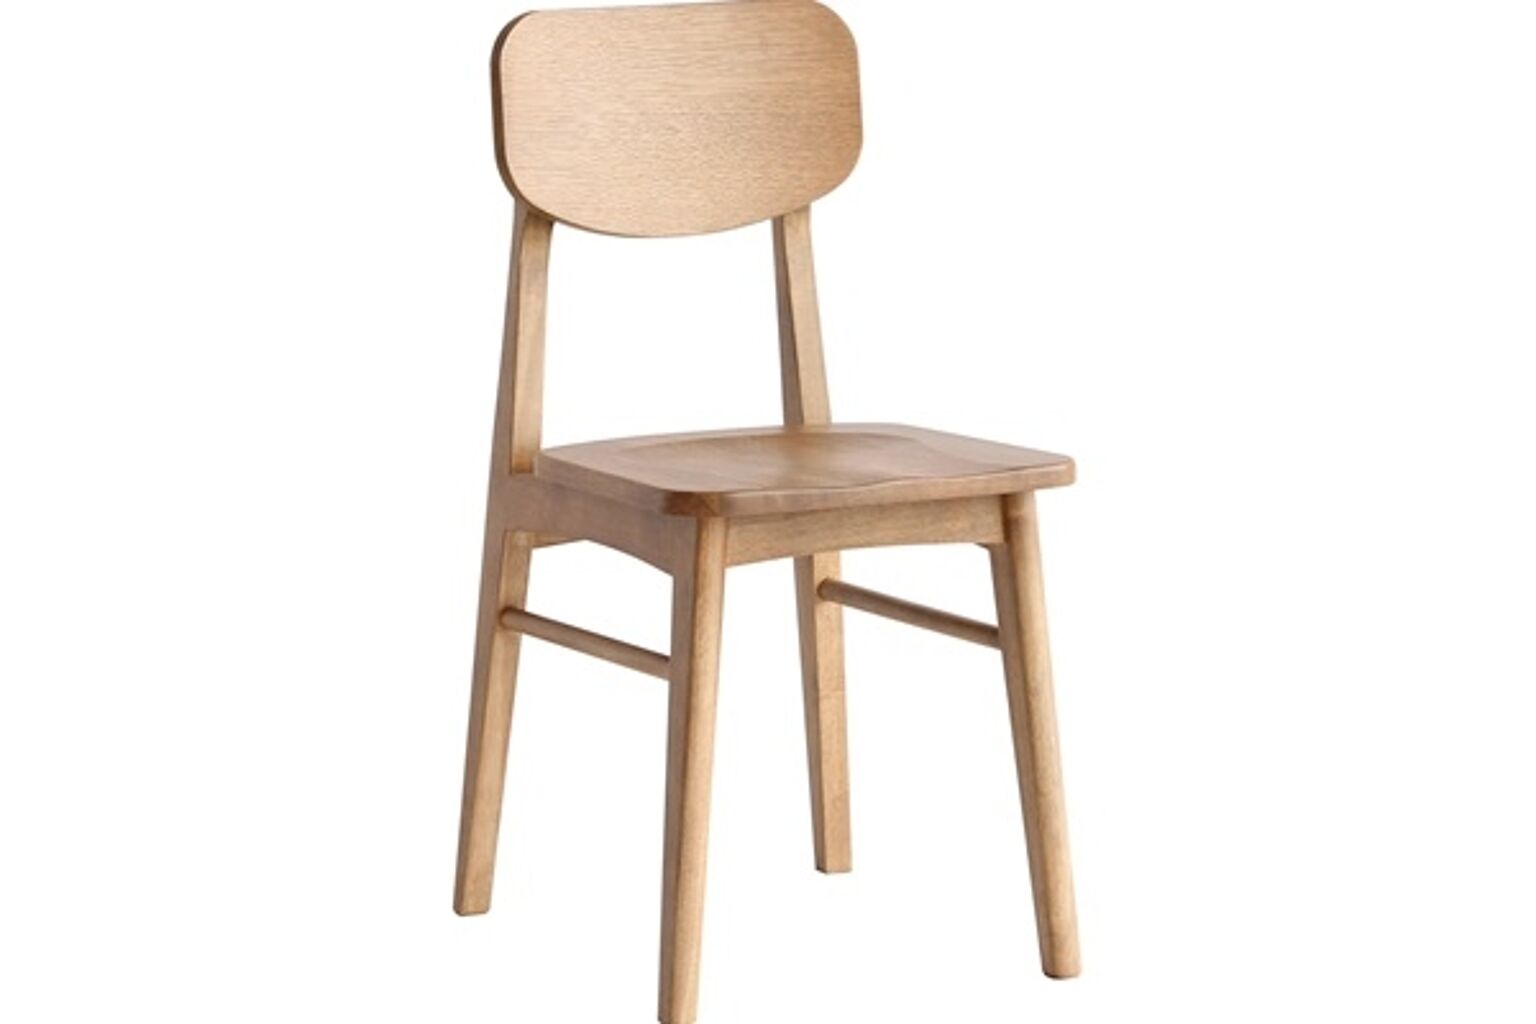 ダイニングチェア ナチュラル 天然木 PVC 合成皮革 ダイニング リビングチェア 木製 チェア イス 椅子 ダイニングチェアー チェアー 食卓 アンティーク レトロ カフェ Rasic Chair 